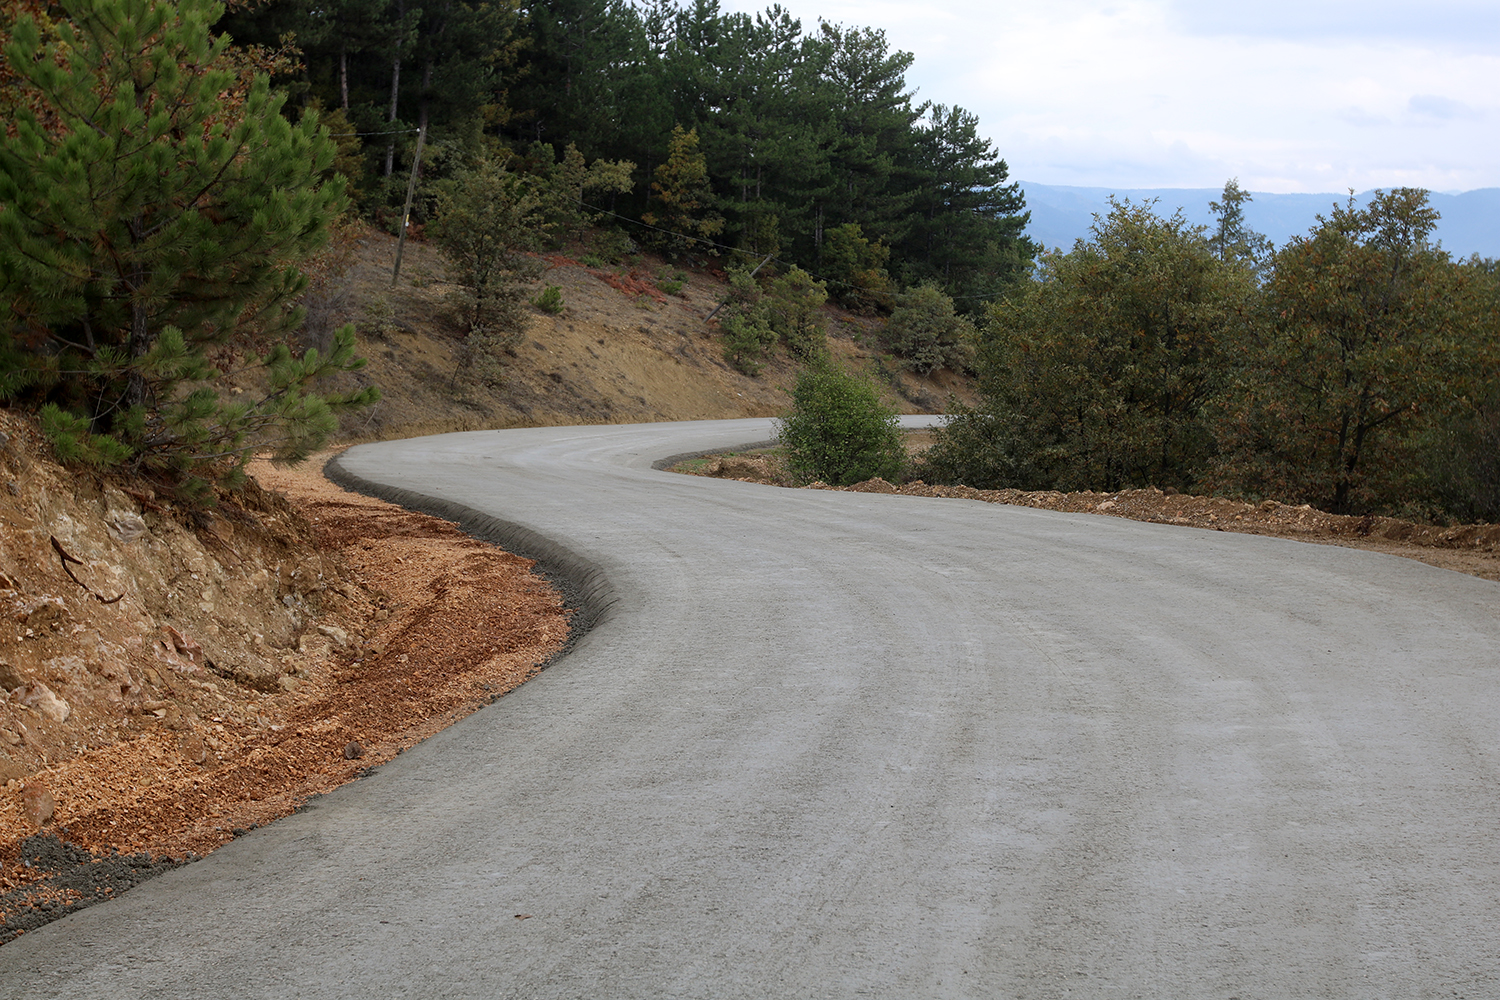 37 kilometrelik beton yol çalışmaları tamamlandı